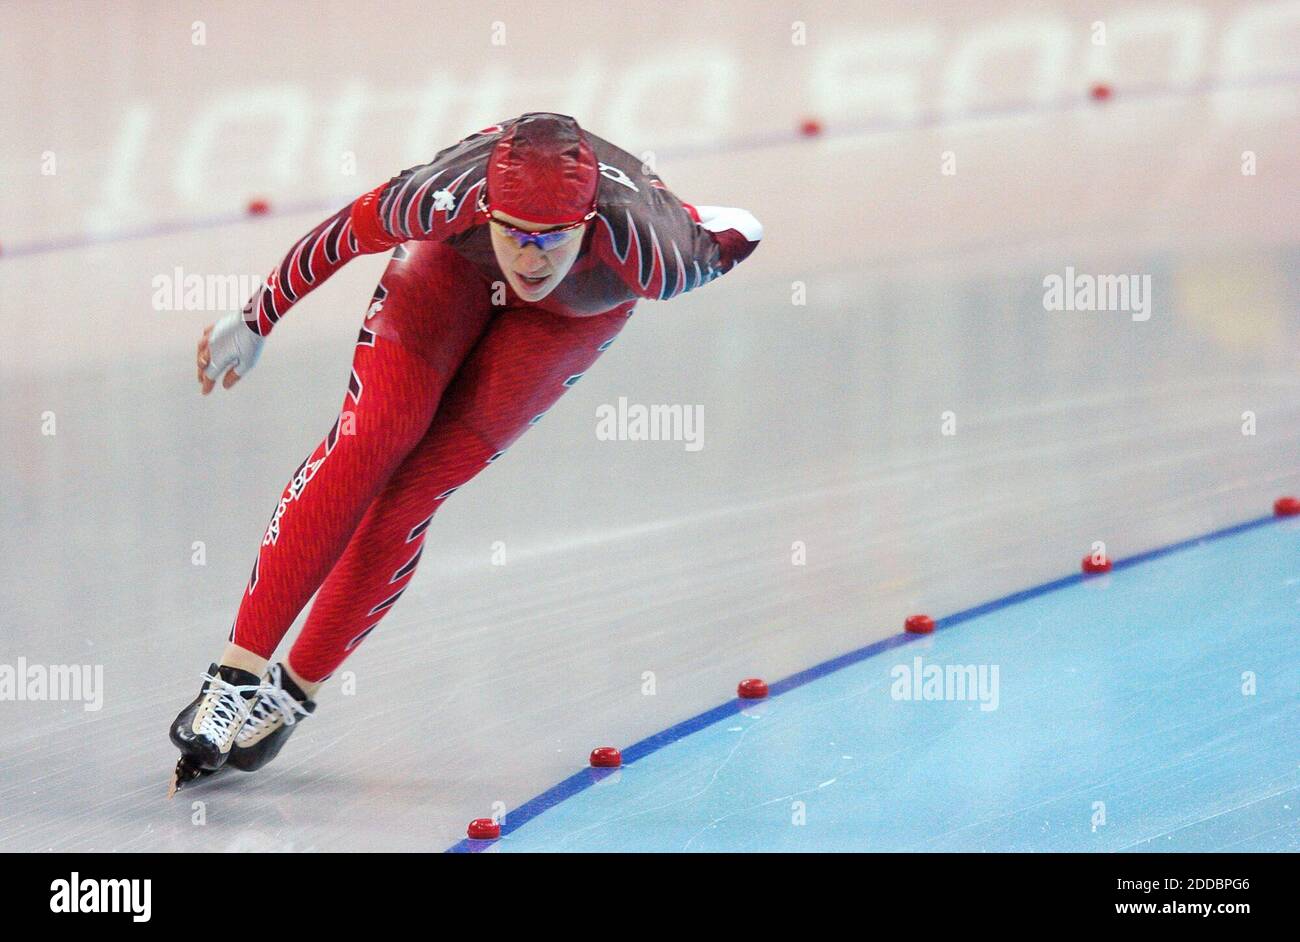 PAS DE FILM, PAS DE VIDÉO, PAS de télévision, PAS DE DOCUMENTAIRE - Clara Hughes, du Canada, fait un tour de piste lors de sa course de médaille d'or à la course de patinage de vitesse de 5000 mètres des dames, le 25 février 2006, à l'Oval Lingotto, à Turin, en Italie, lors des Jeux olympiques d'hiver de 2006. Photo de Steve Deslich/KRT/Cameleon/ABACAPRESS.COM Banque D'Images